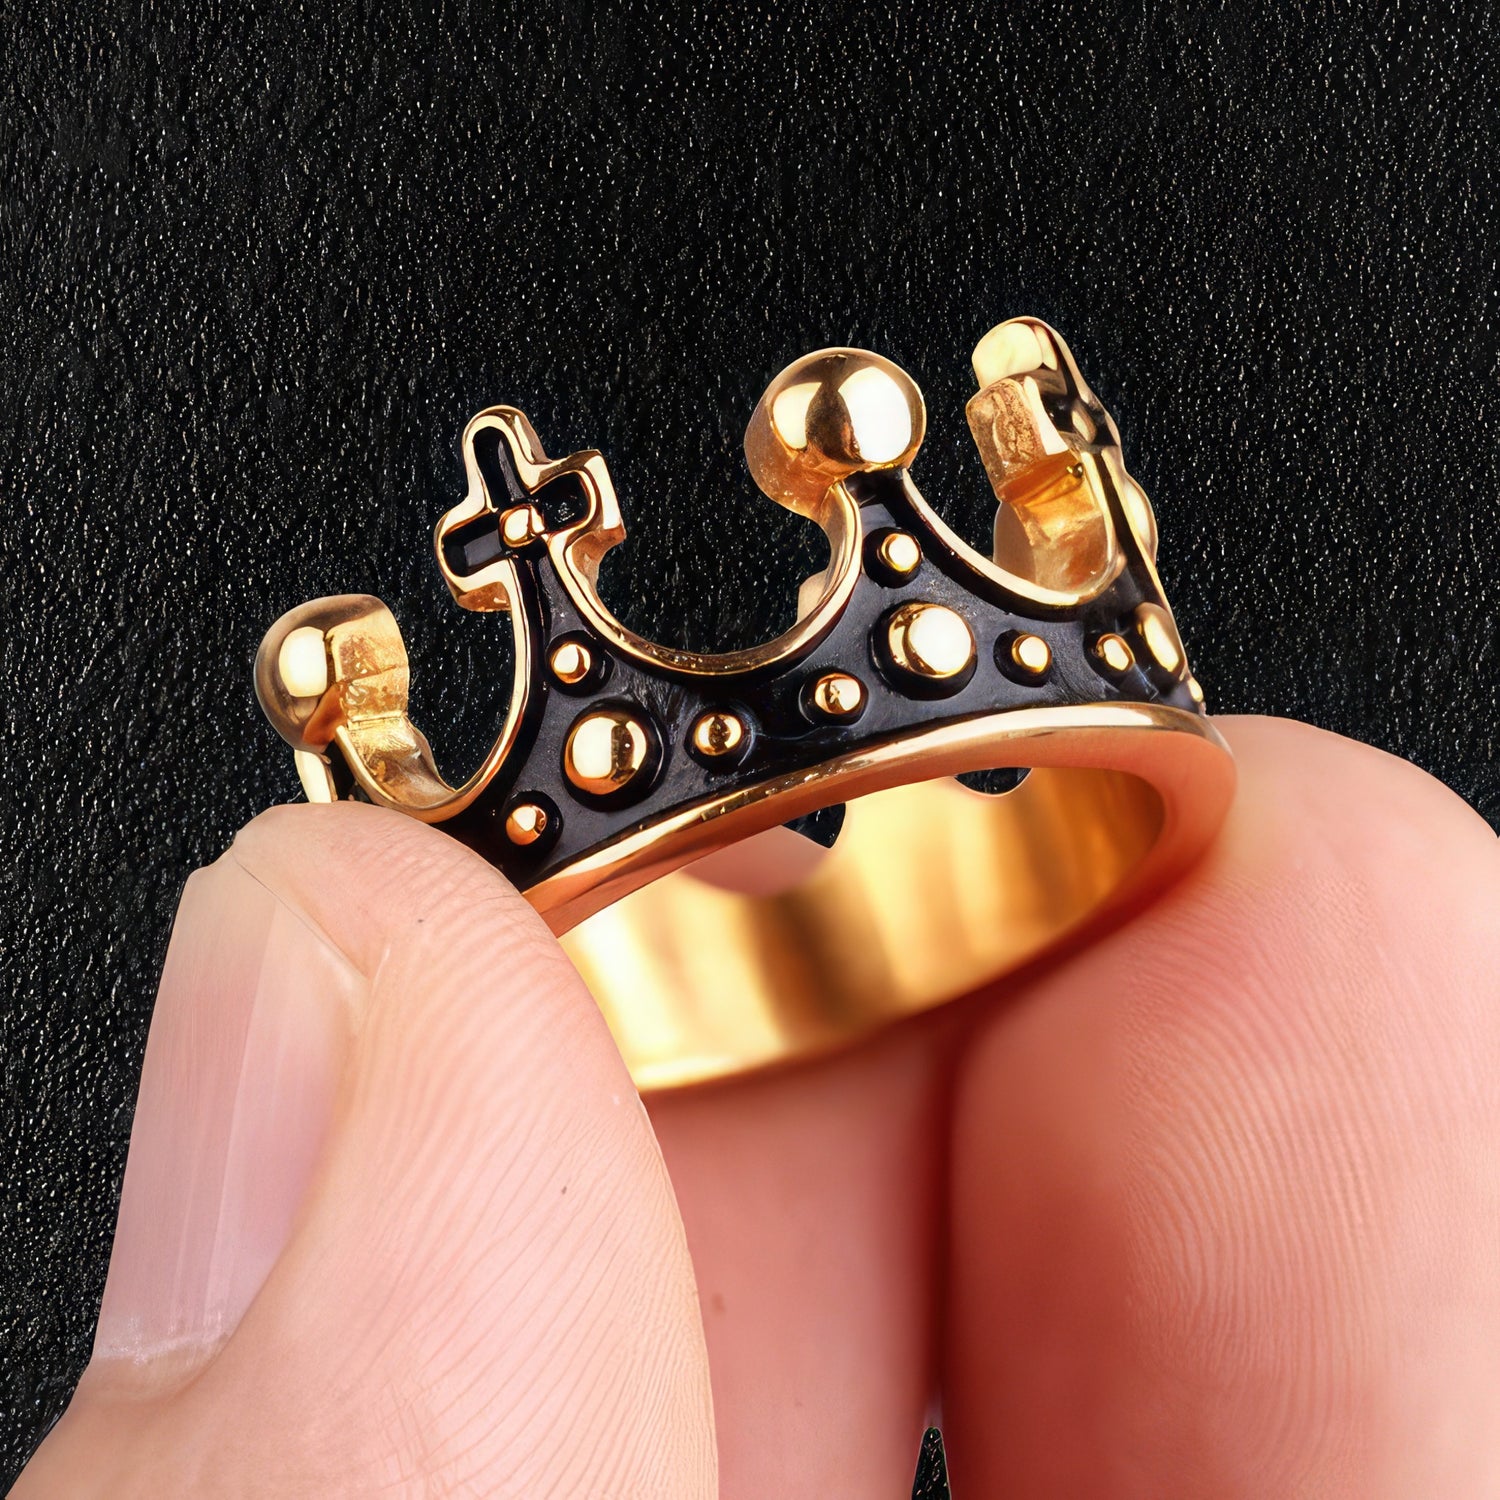 Gold & Black Royal Crown Ring